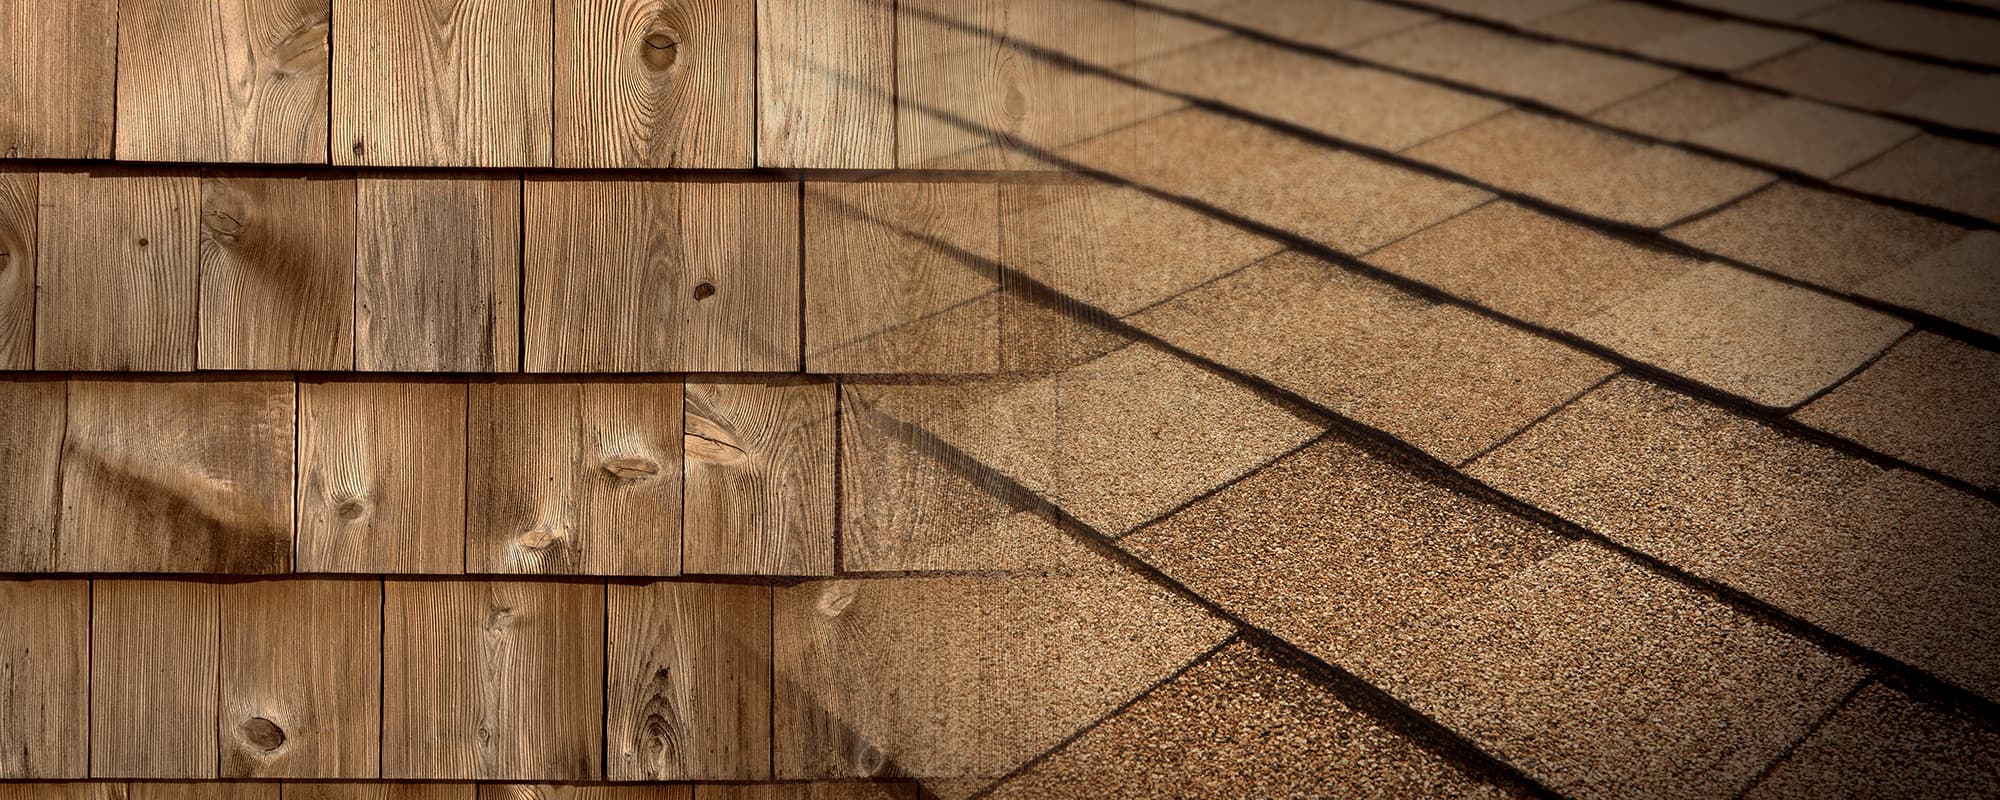 wood roof shingles